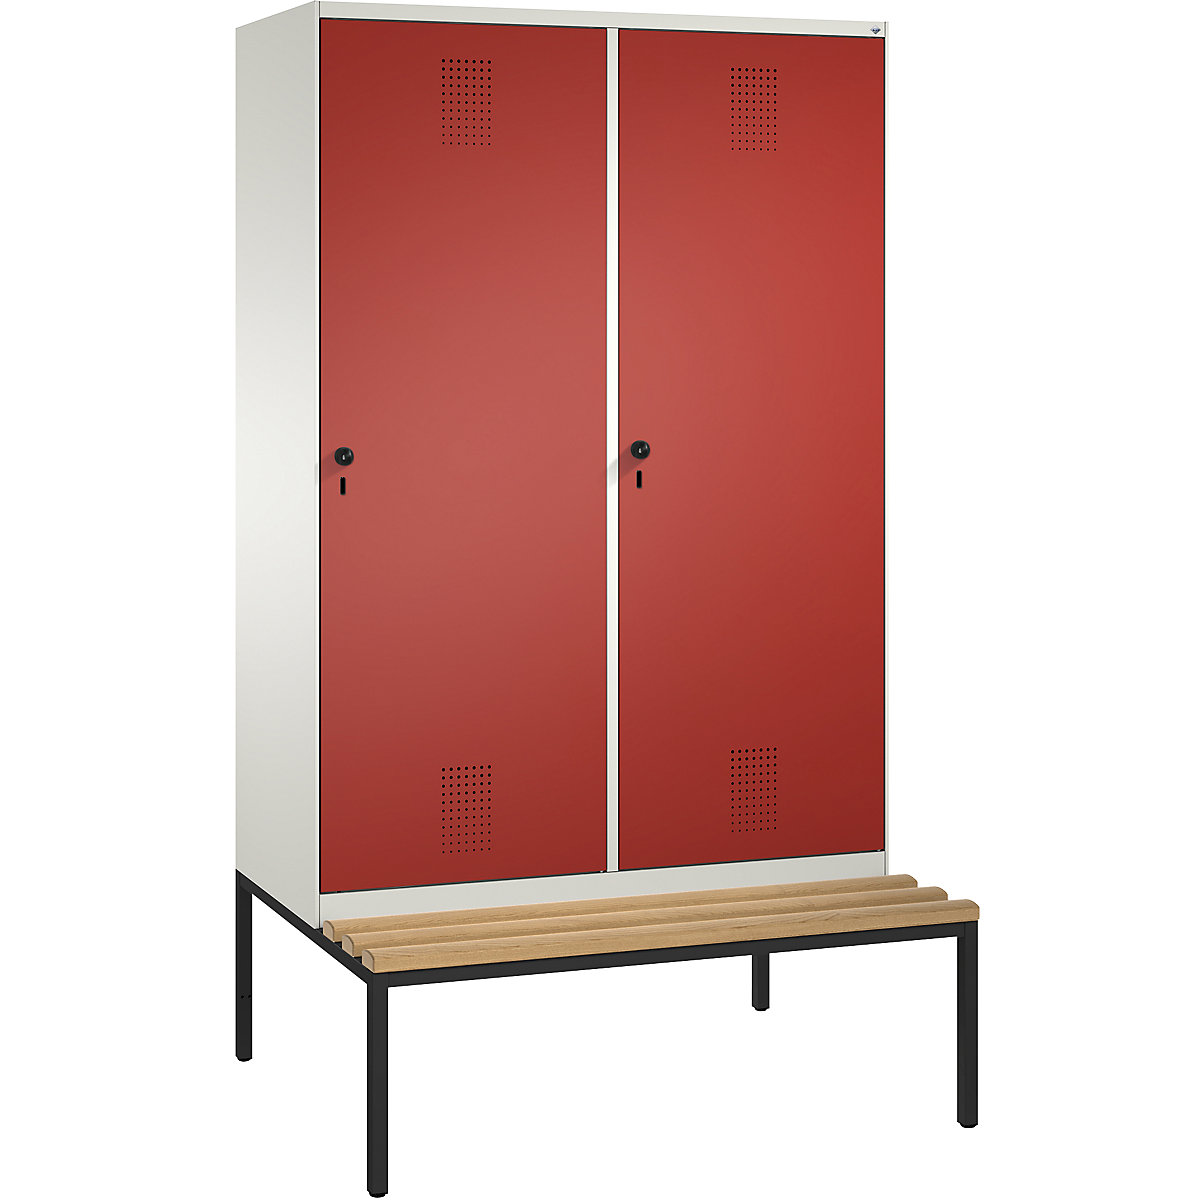 Šatní skříň s lavicí EVOLO s dveřmi přes 2 oddíly – C+P, 4 oddíly, 2 dveře, šířka oddílu 300 mm, čistá bílá / ohnivě červená-16